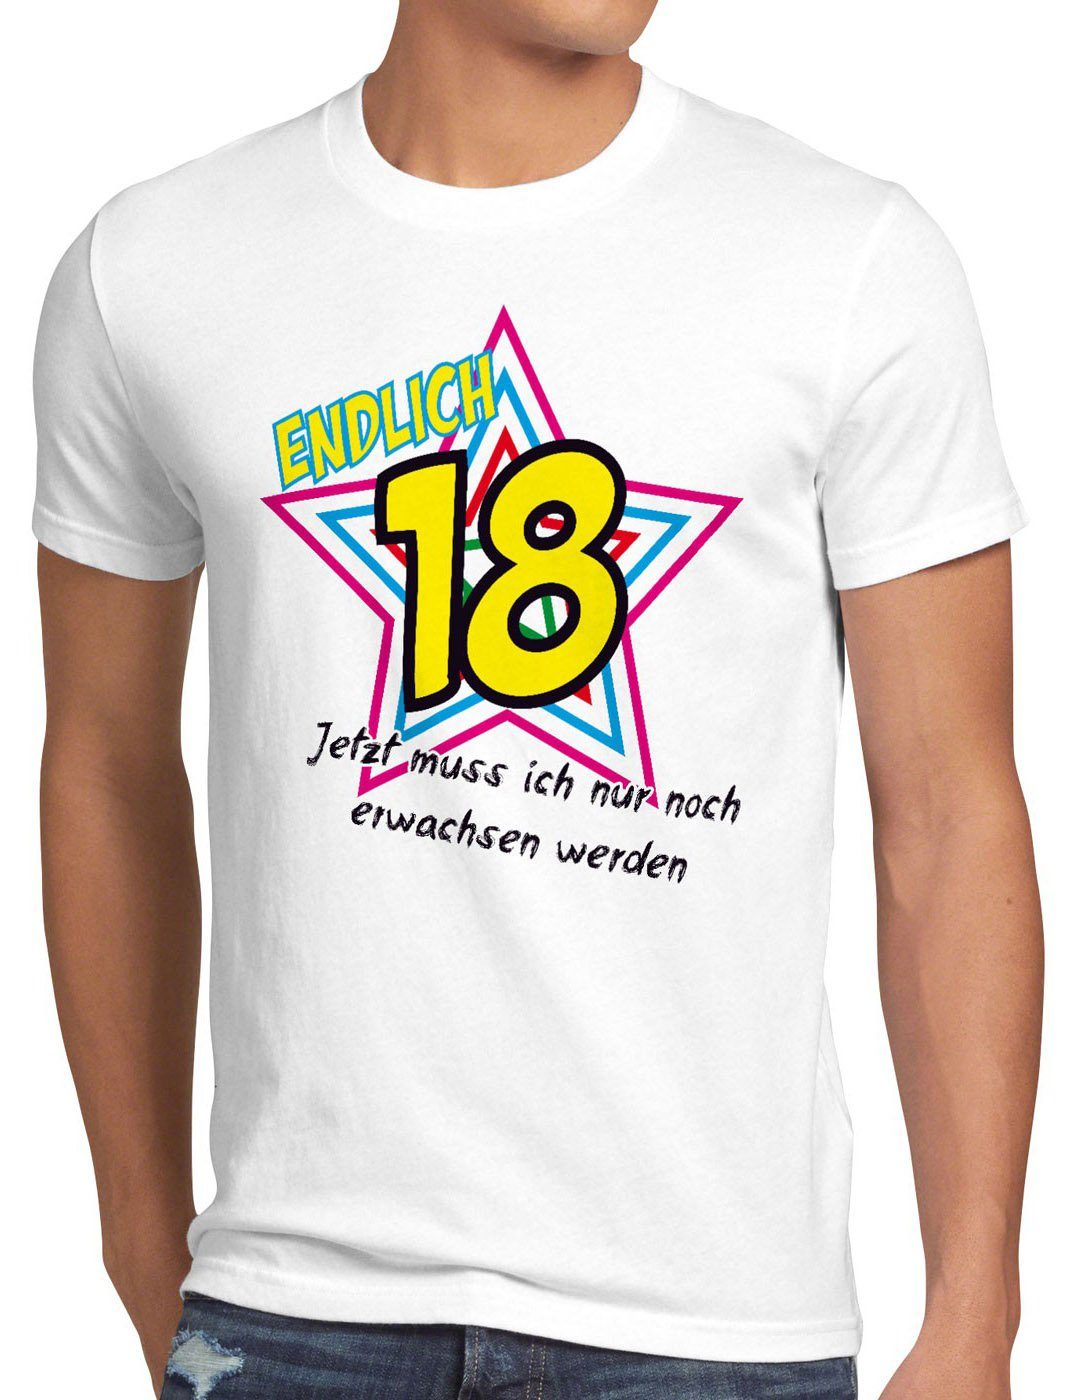 Funshirt 18 Print-Shirt werden! Jetzt noch Herren Geburtstag style3 erwachsen Endlich T-Shirt weiß Fun